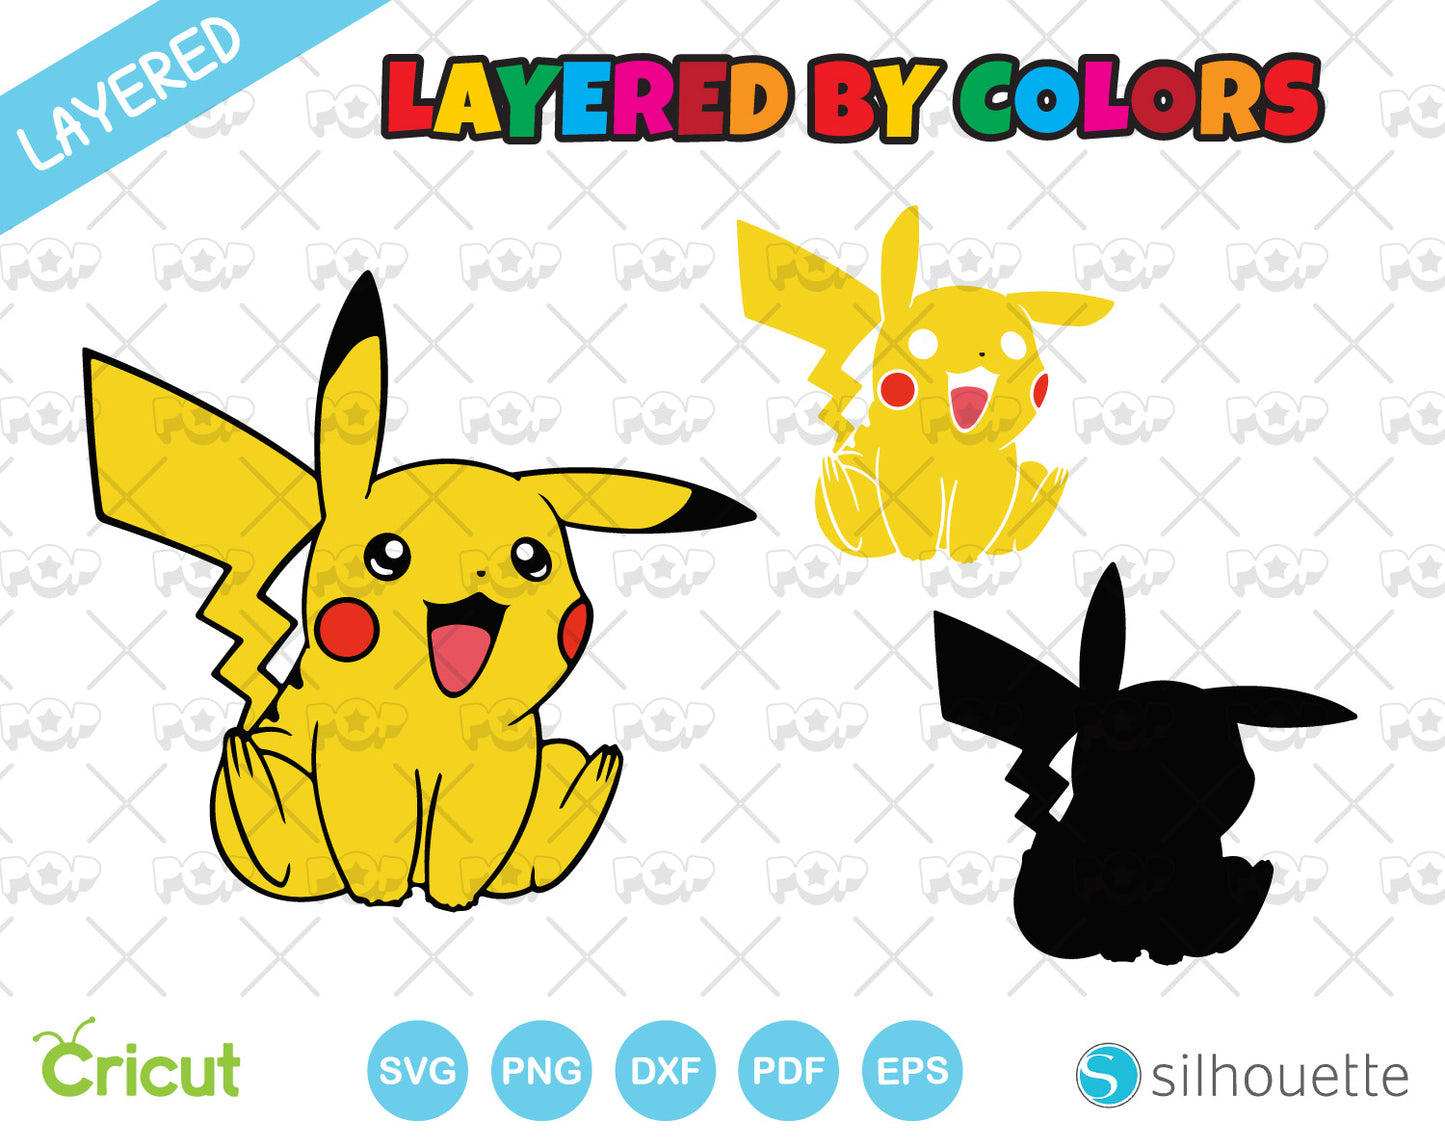 Pikachu clipart bundle + Alphabet, Pokemon SVG cut files for cricut silhouette, SVG, PNG, DXF, instant download